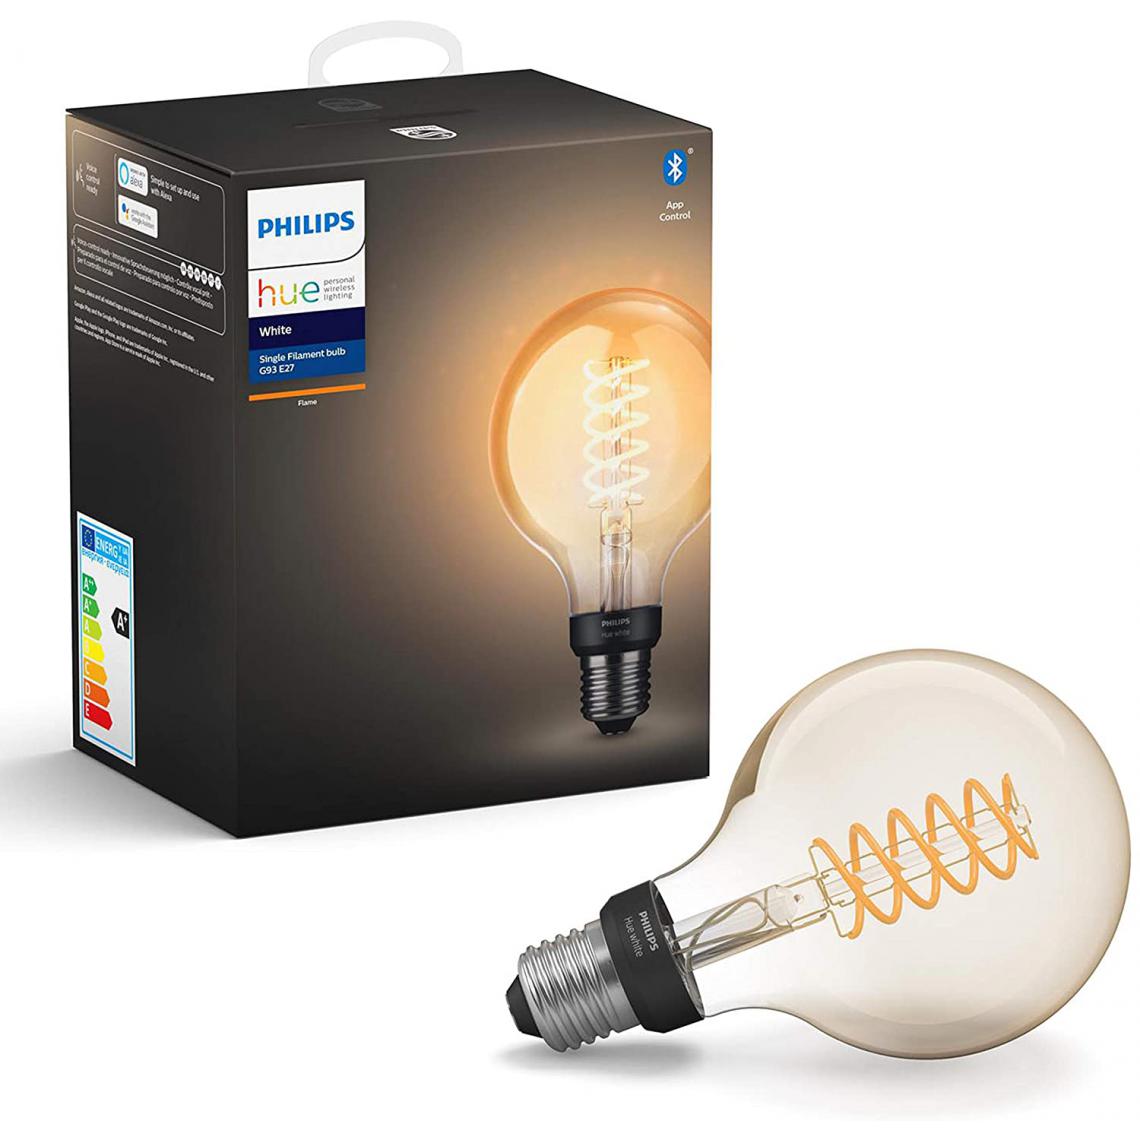 Philips - ampoule LED Connectée White Filament E27 Forme Globe Compatible Bluetooth 7 W avec fonctionne avec Alexa [Classe énergétique A+] - Lampe connectée